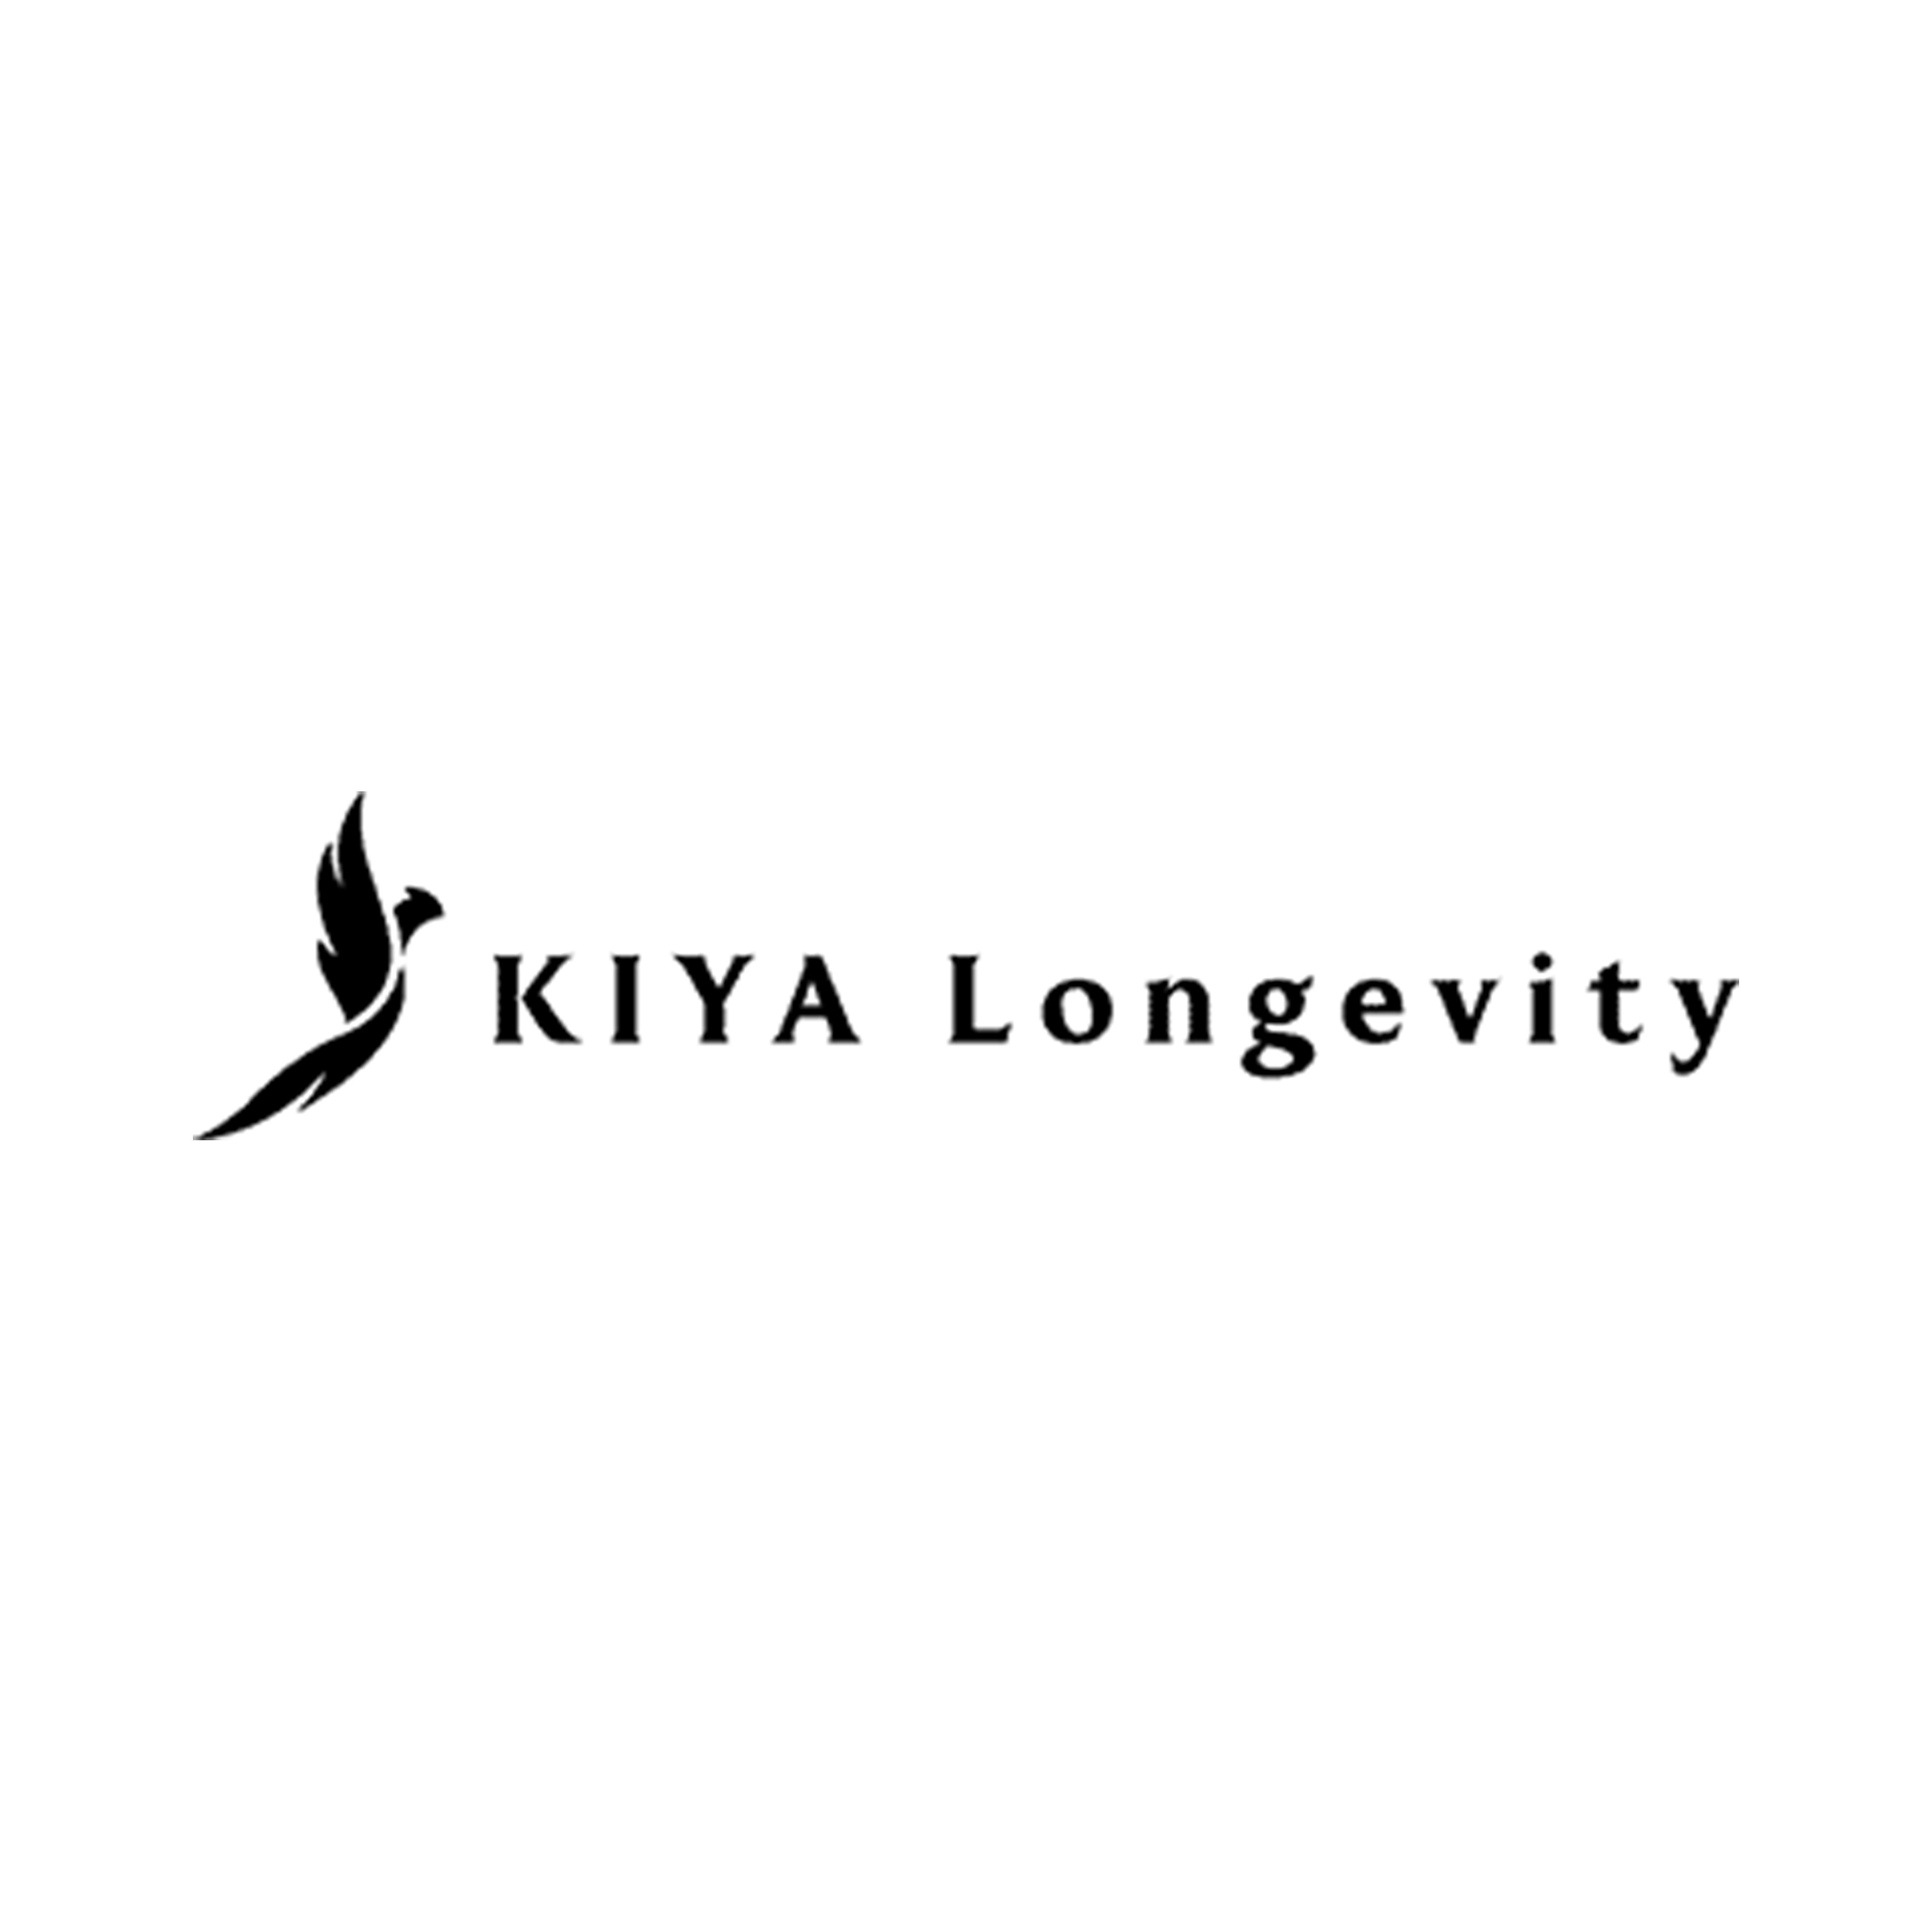 KIYA Longevity logo